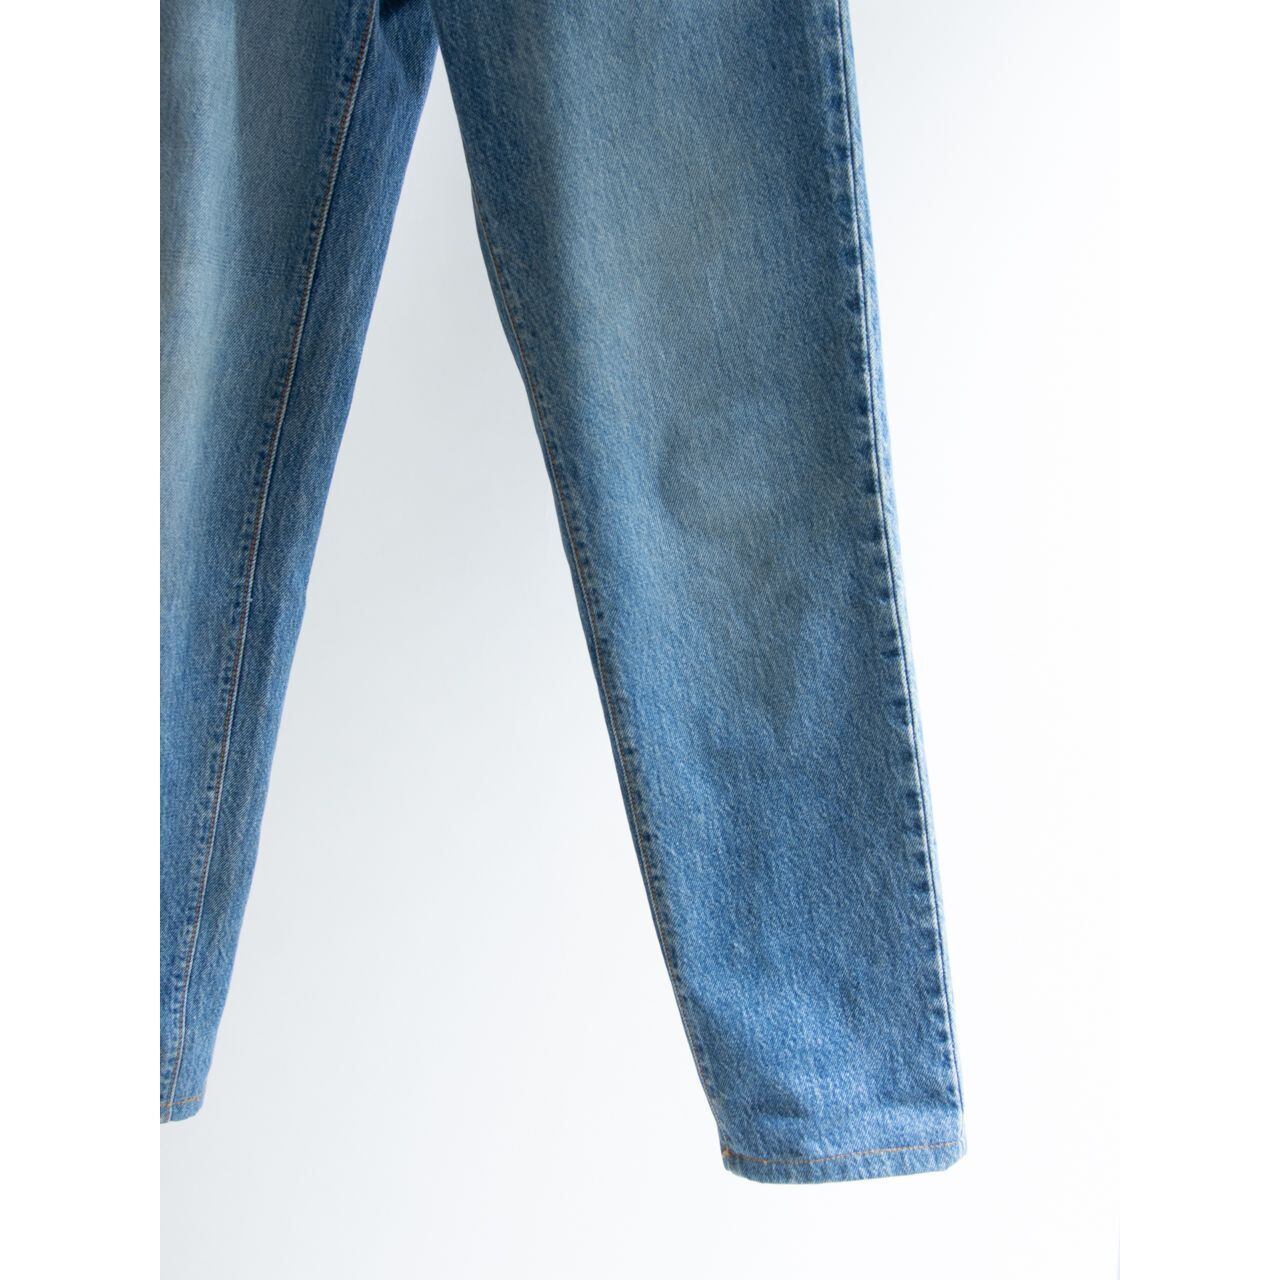 【LEVI'S 17501】Made in U.S.A. 90's tapered denim pants 3（リーバイス アメリカ製 テーパードデニムパンツ ジーンズ）12a